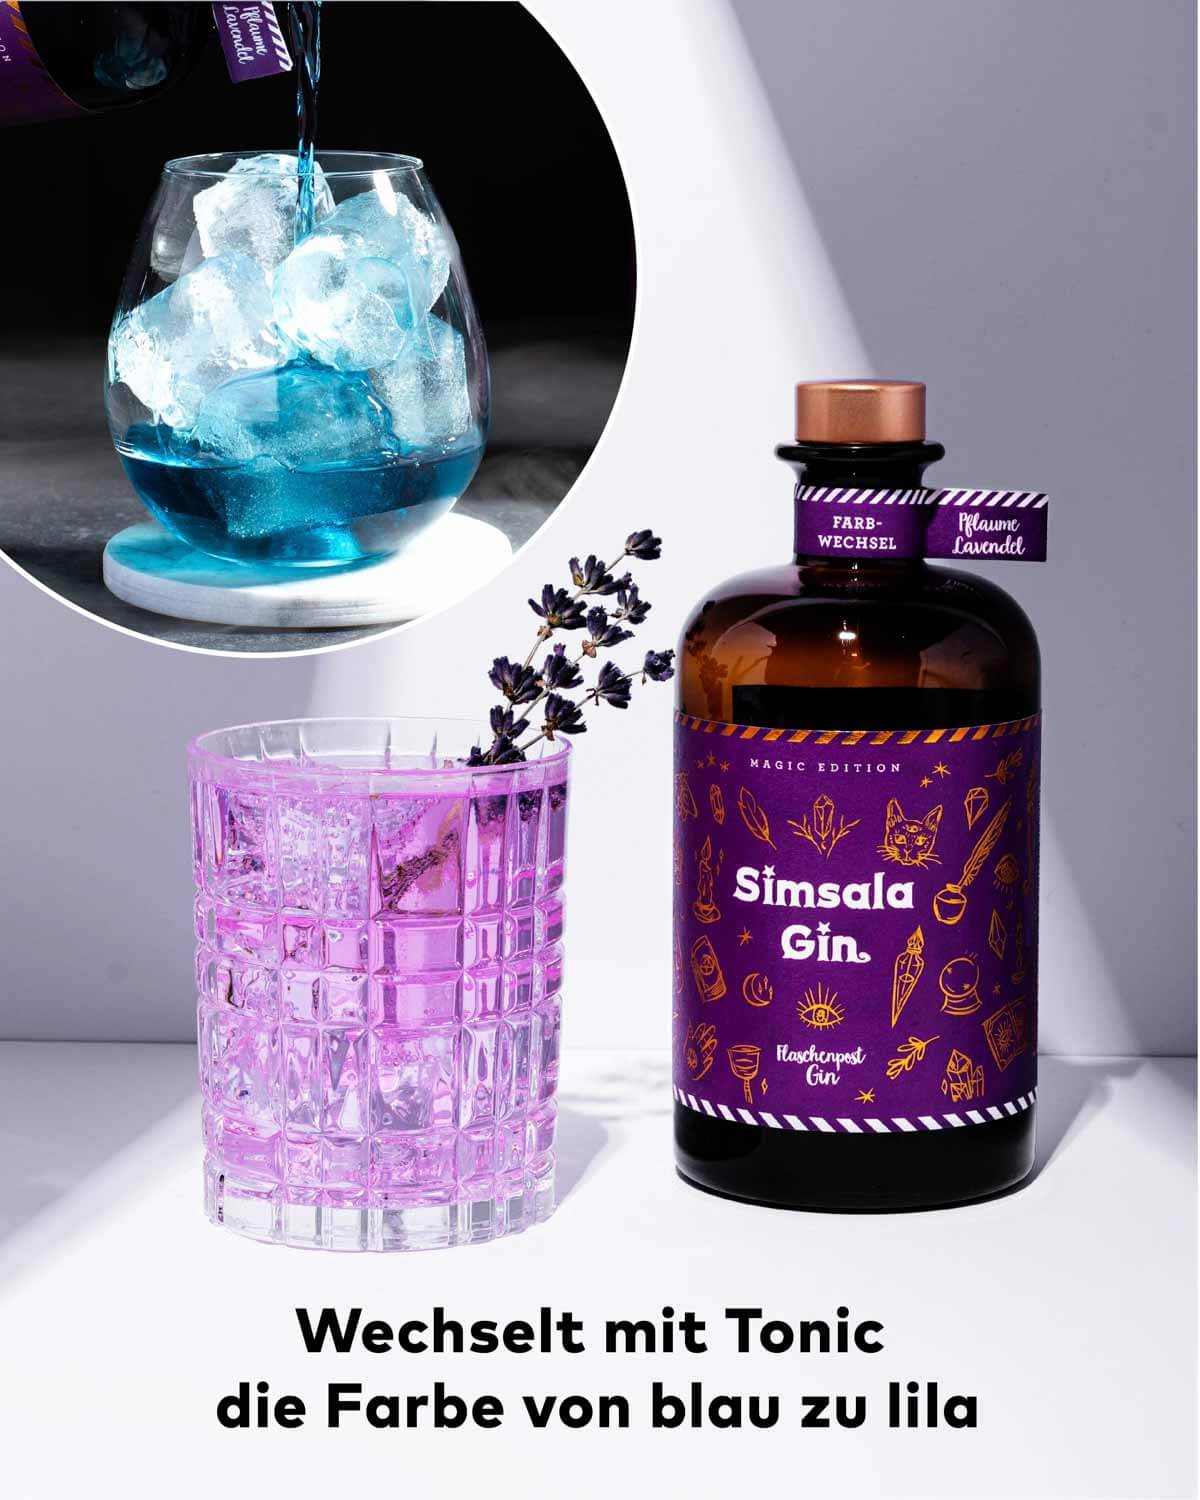 Simsala Gin® by Flaschenpost Gin - Magic Edition mit Farbwechsel